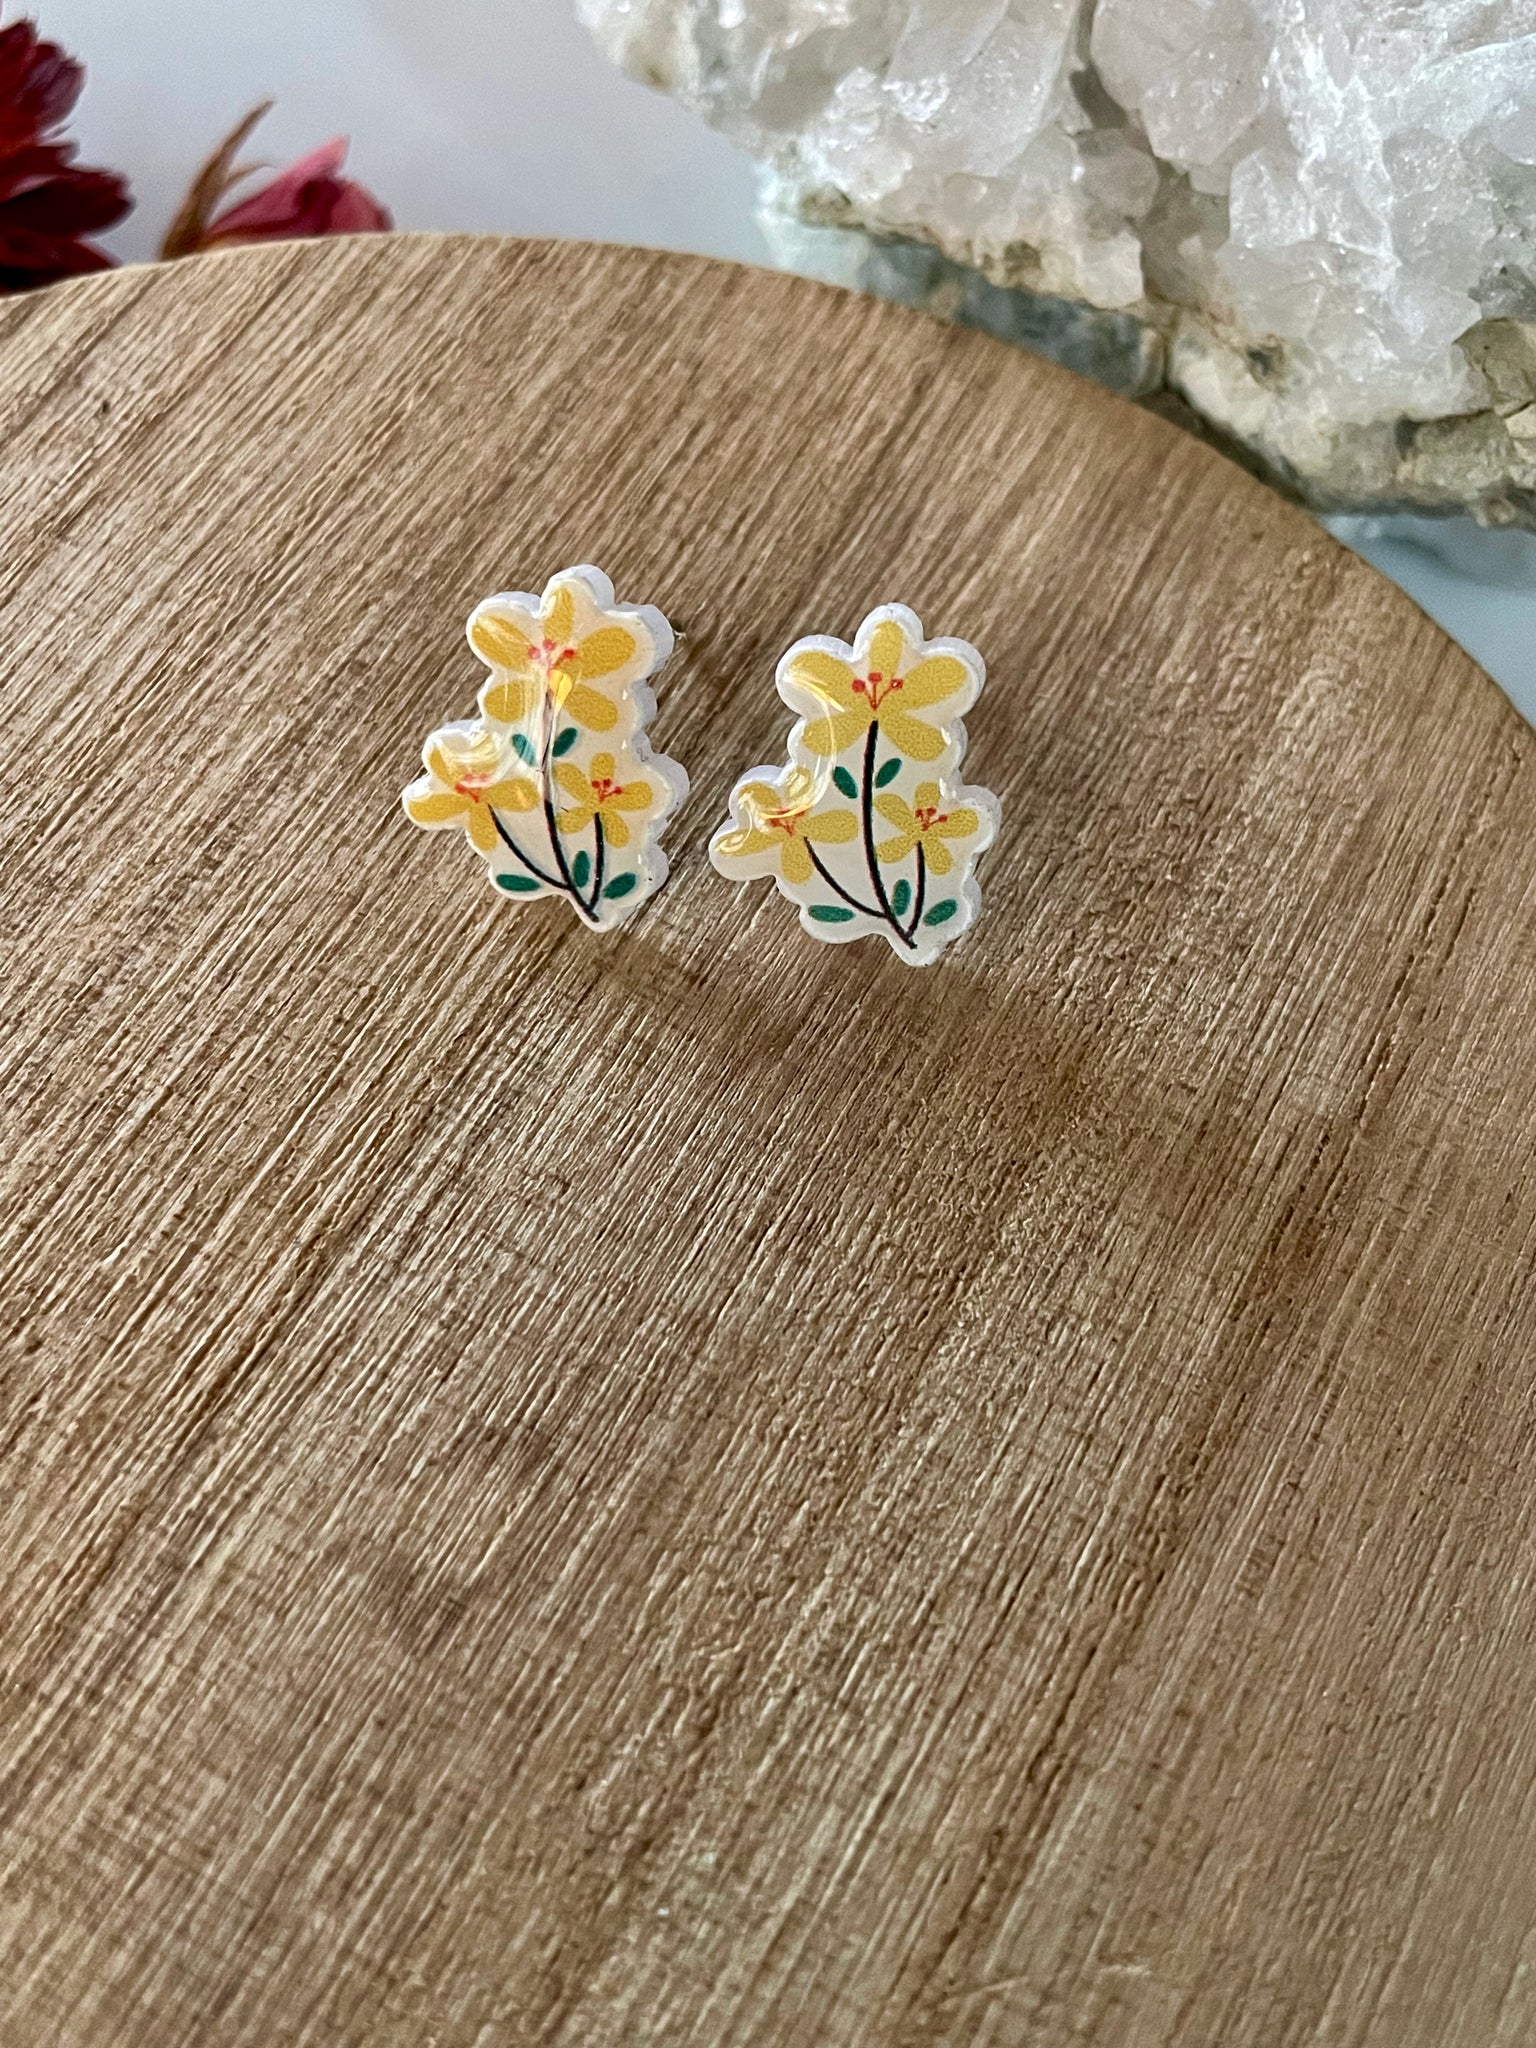 acrylic daisy stud earrings